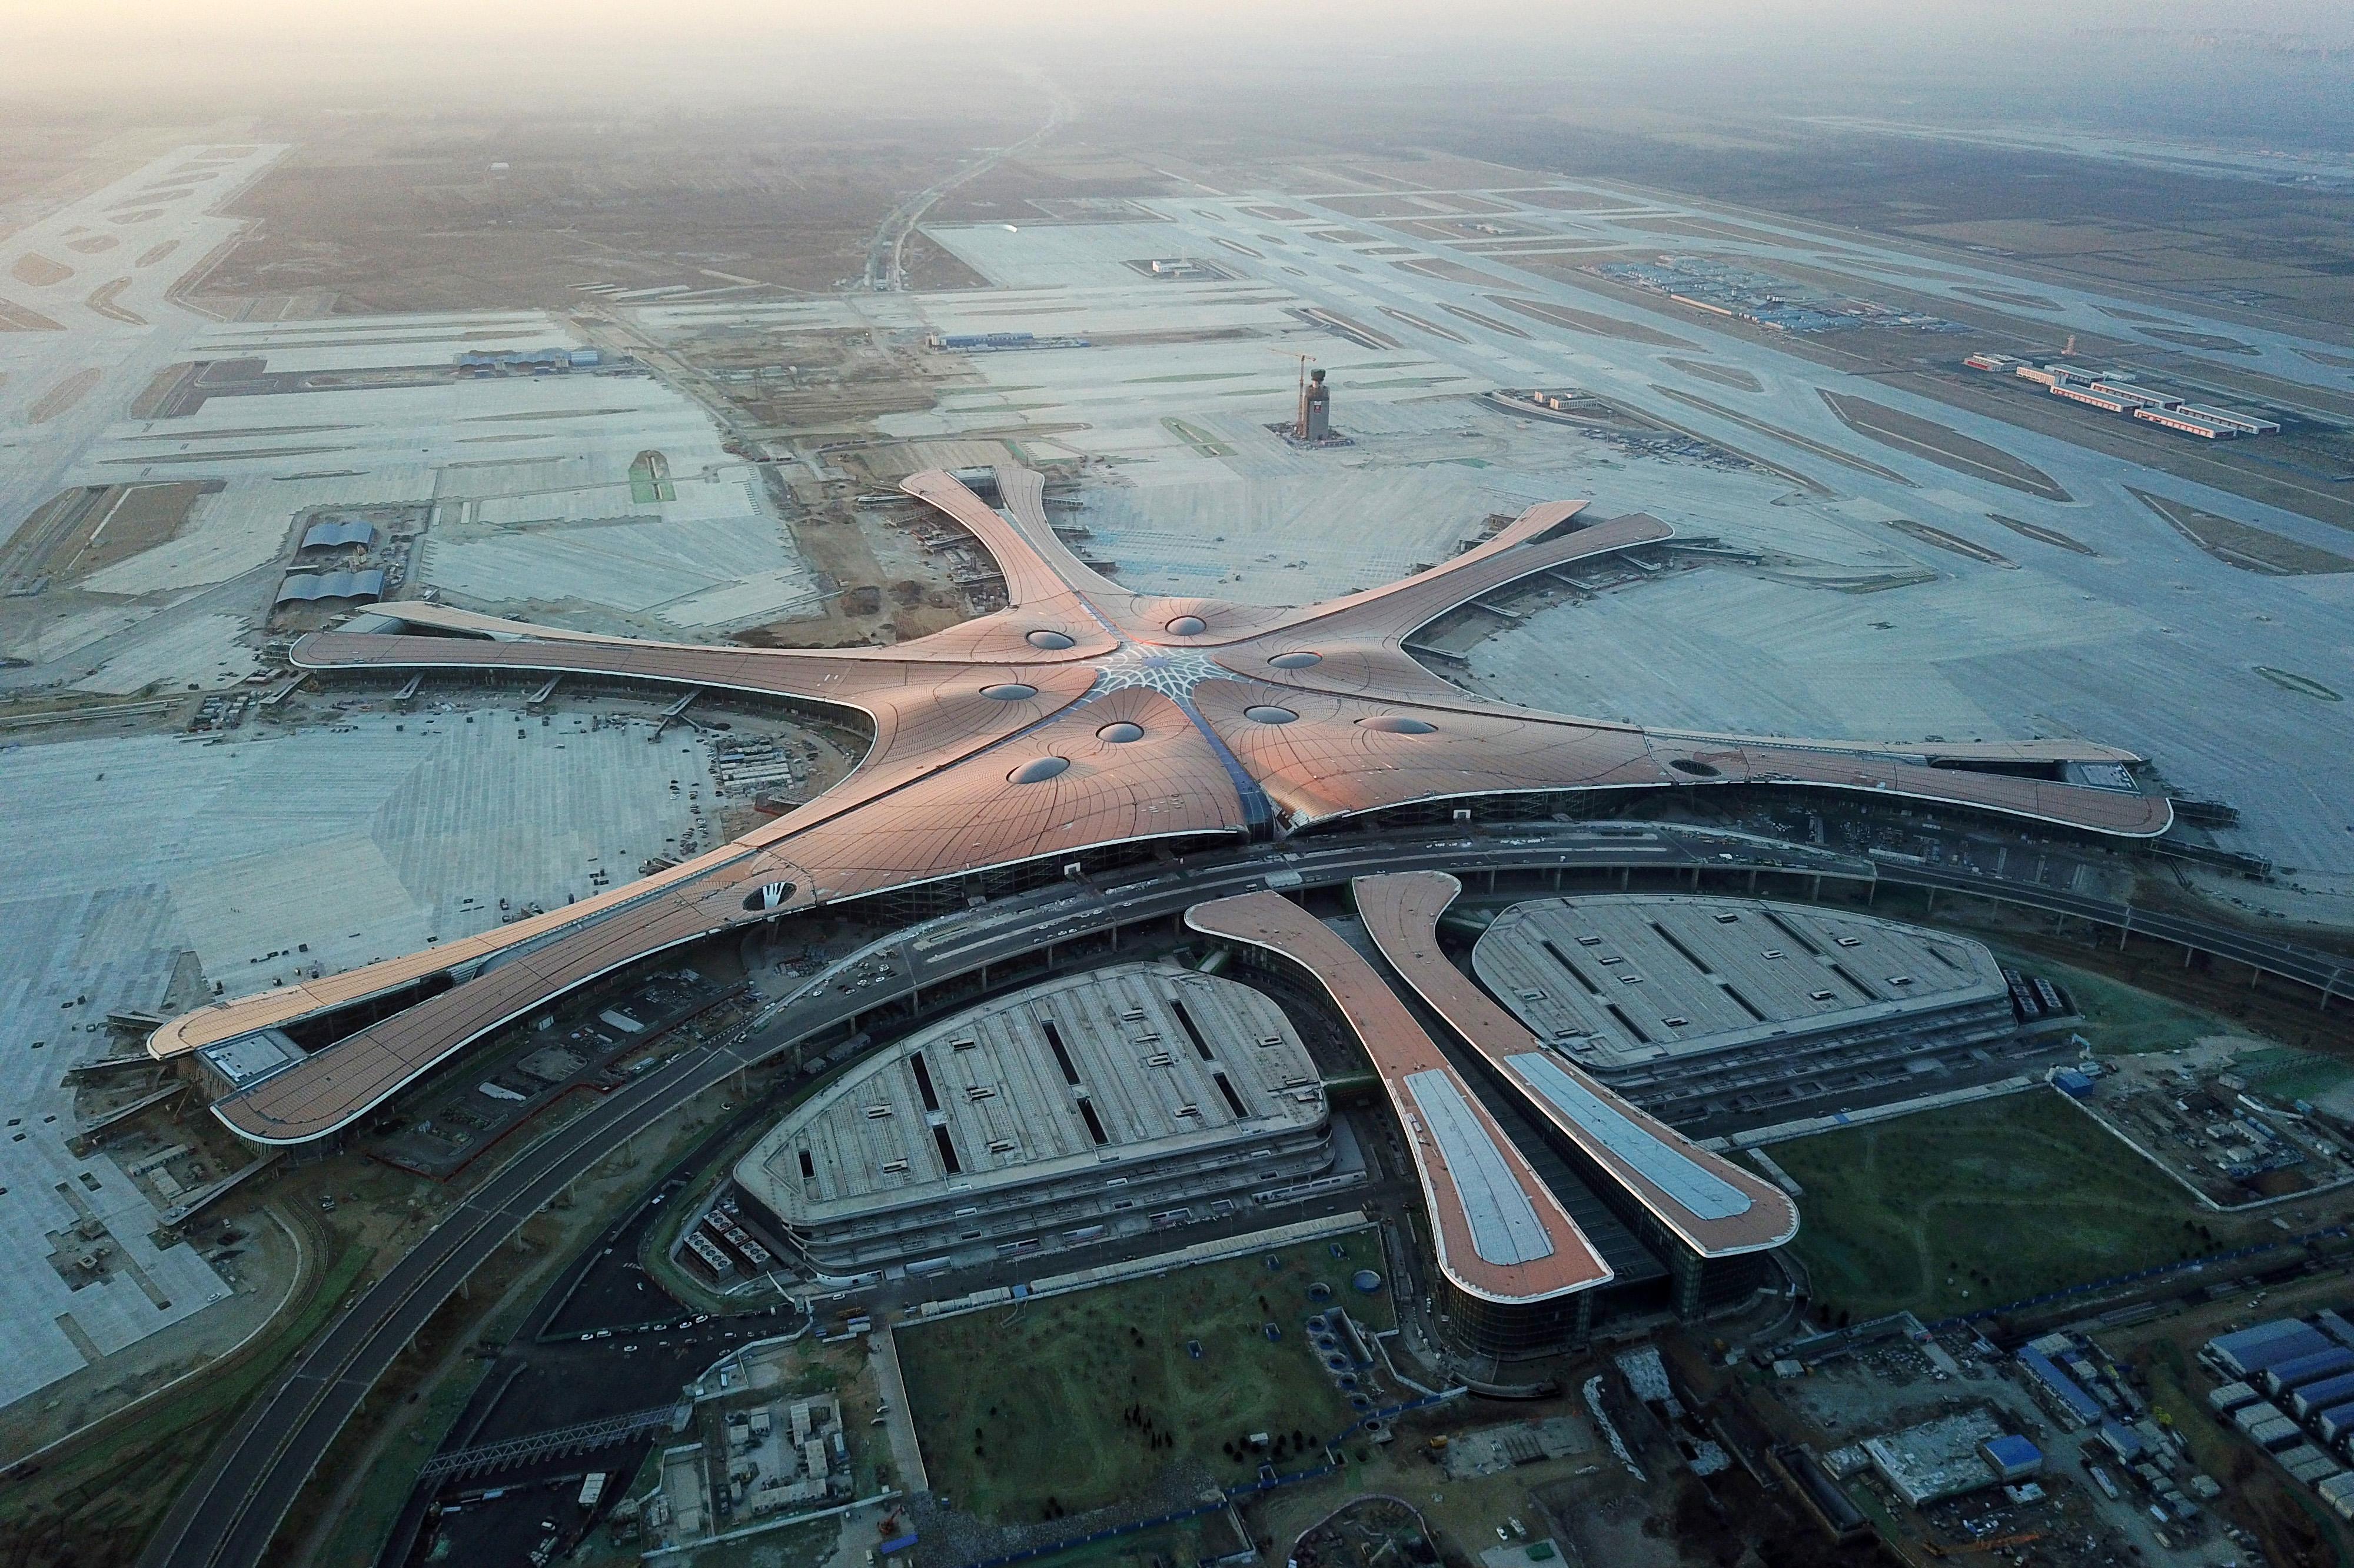 Прилет аэропорт пекин. Пекинский Международный аэропорт Дасин. Аэропорт Пекин Дасин, Китай. Новый аэропорт Пекина Дасин. Заха Хадид Пекинский аэропорт.